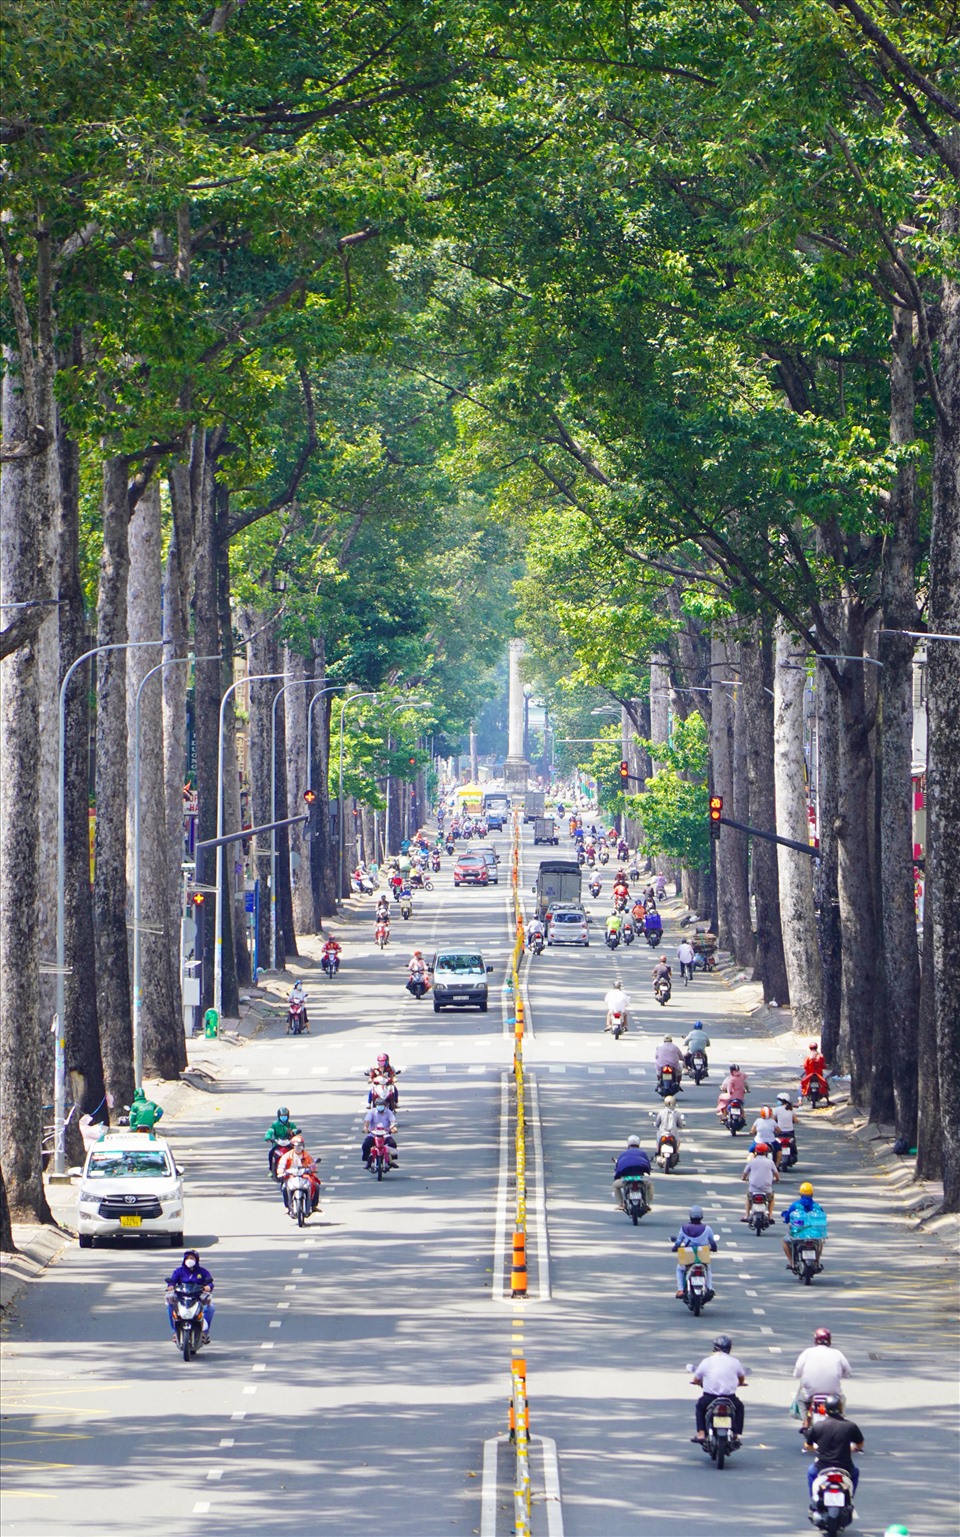 Lượng lượng chức năng tại chốt kiểm soát trên đường Hoàng Minh Giám (quận Phú Nhuận) kiểm soát lý do ra đường của người dân.